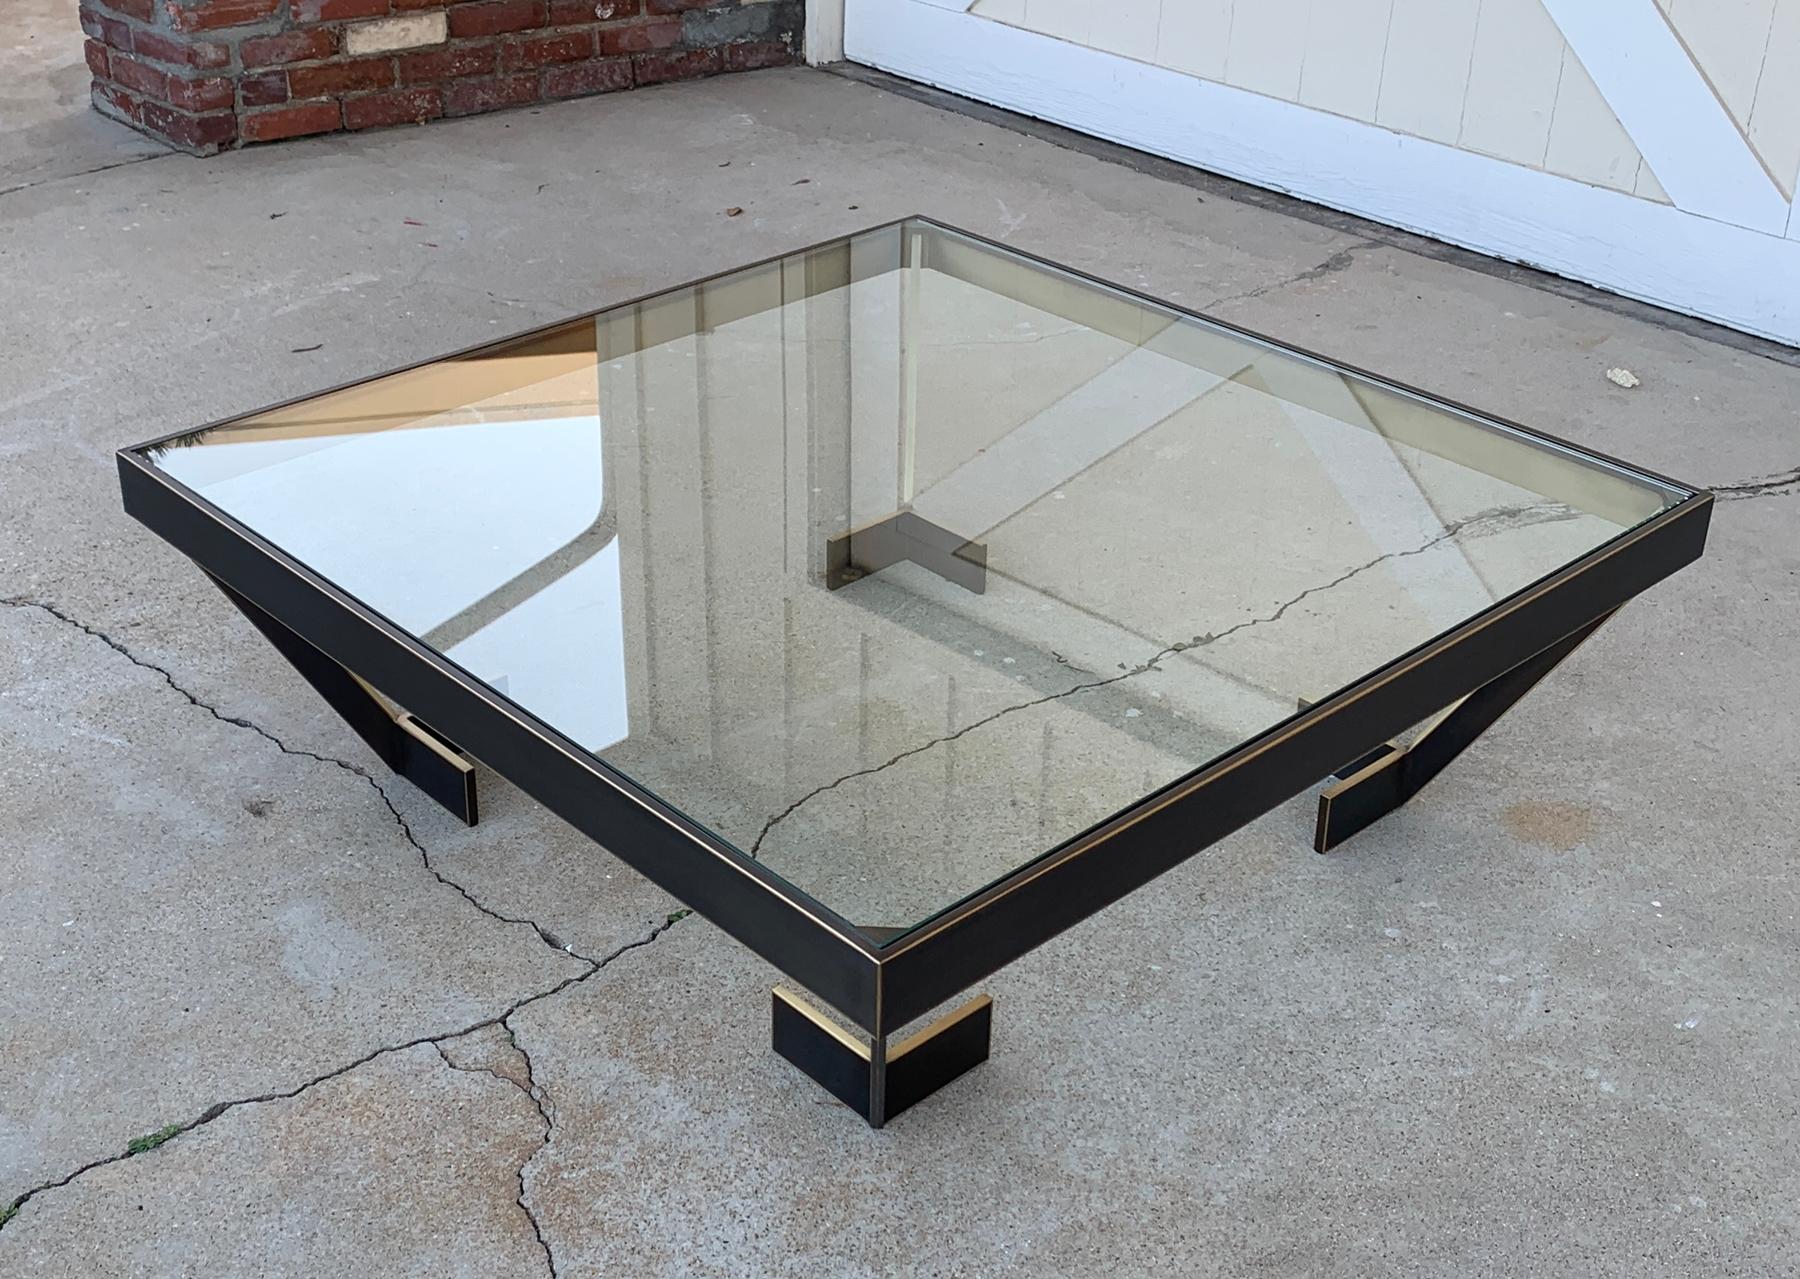 Voici l'exquise table basse en laiton massif et verre, méticuleusement fabriquée par l'artiste de renom Amparo Calderon Tapia aux États-Unis en 2021.

 Cette pièce étonnante allie la beauté intemporelle du laiton massif à l'élégance épurée du verre,